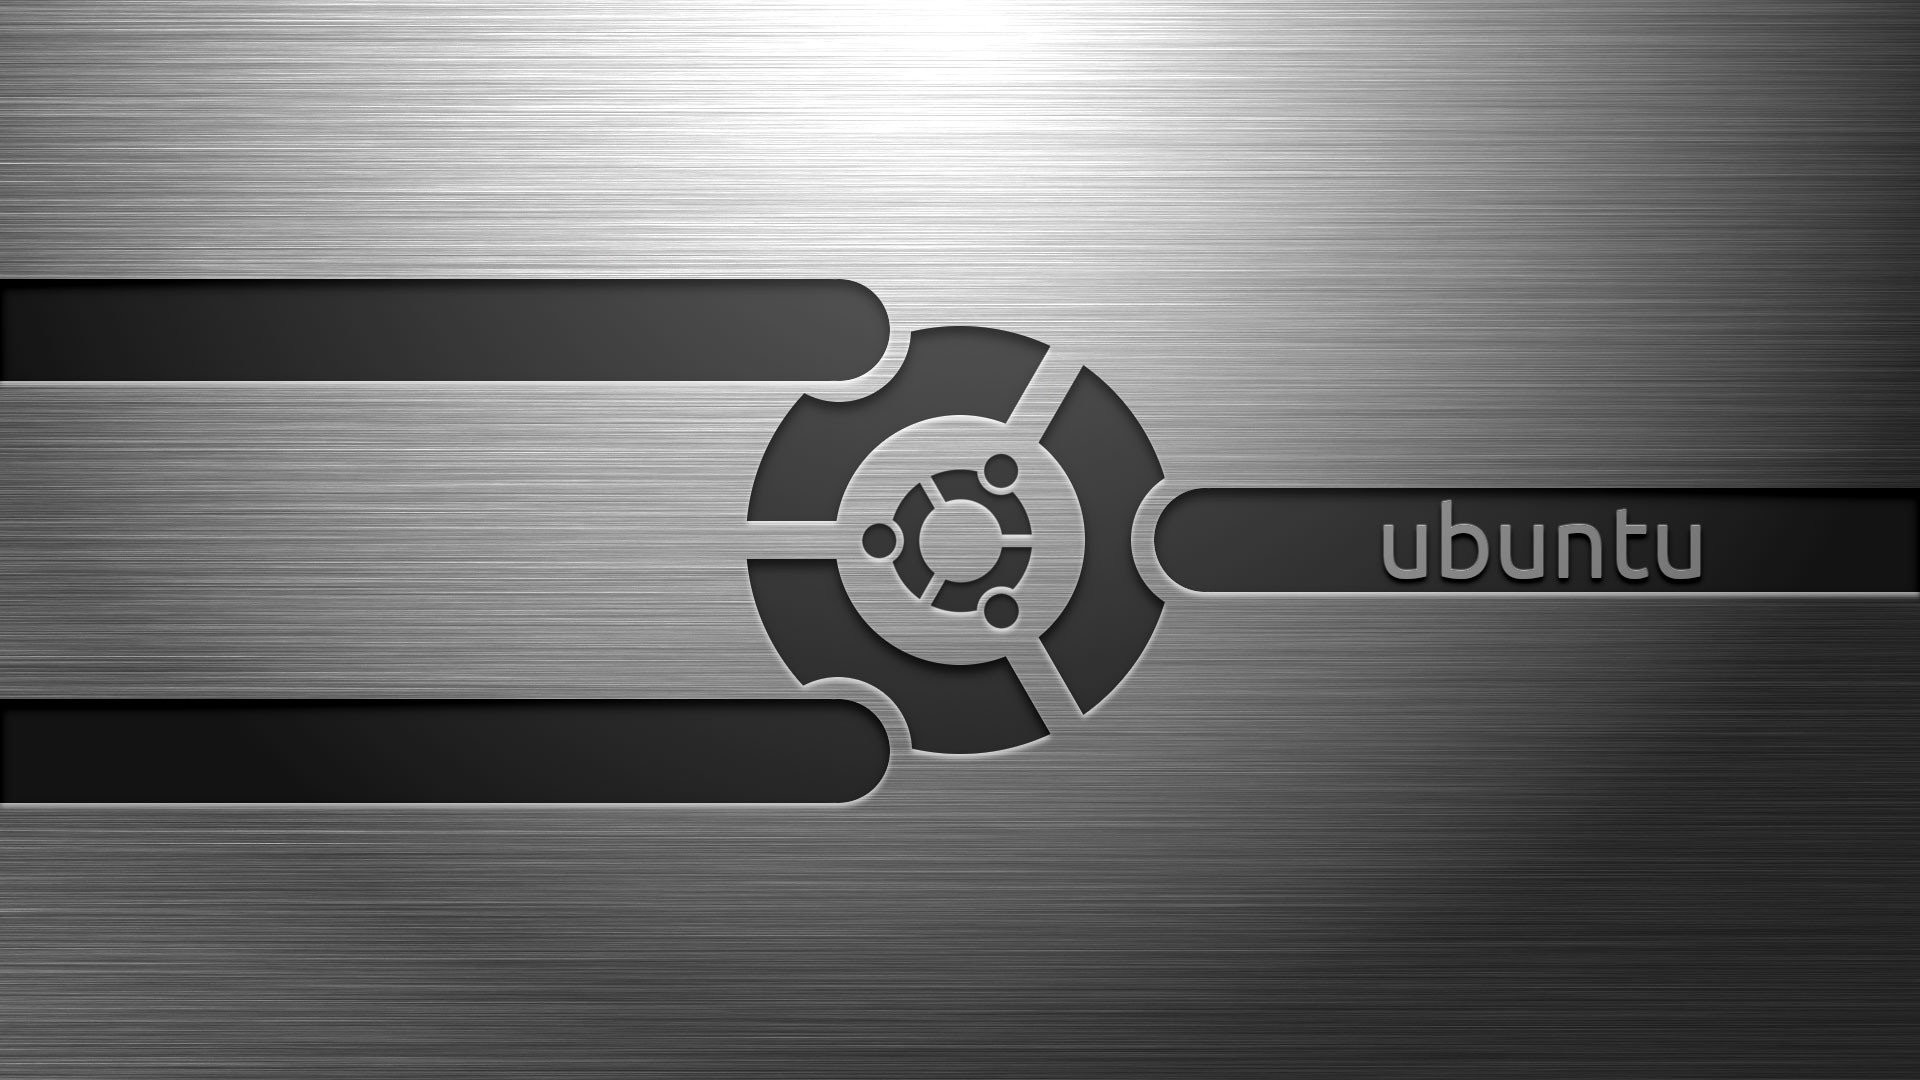 ubuntu fondo oscuro,fuente,gráficos